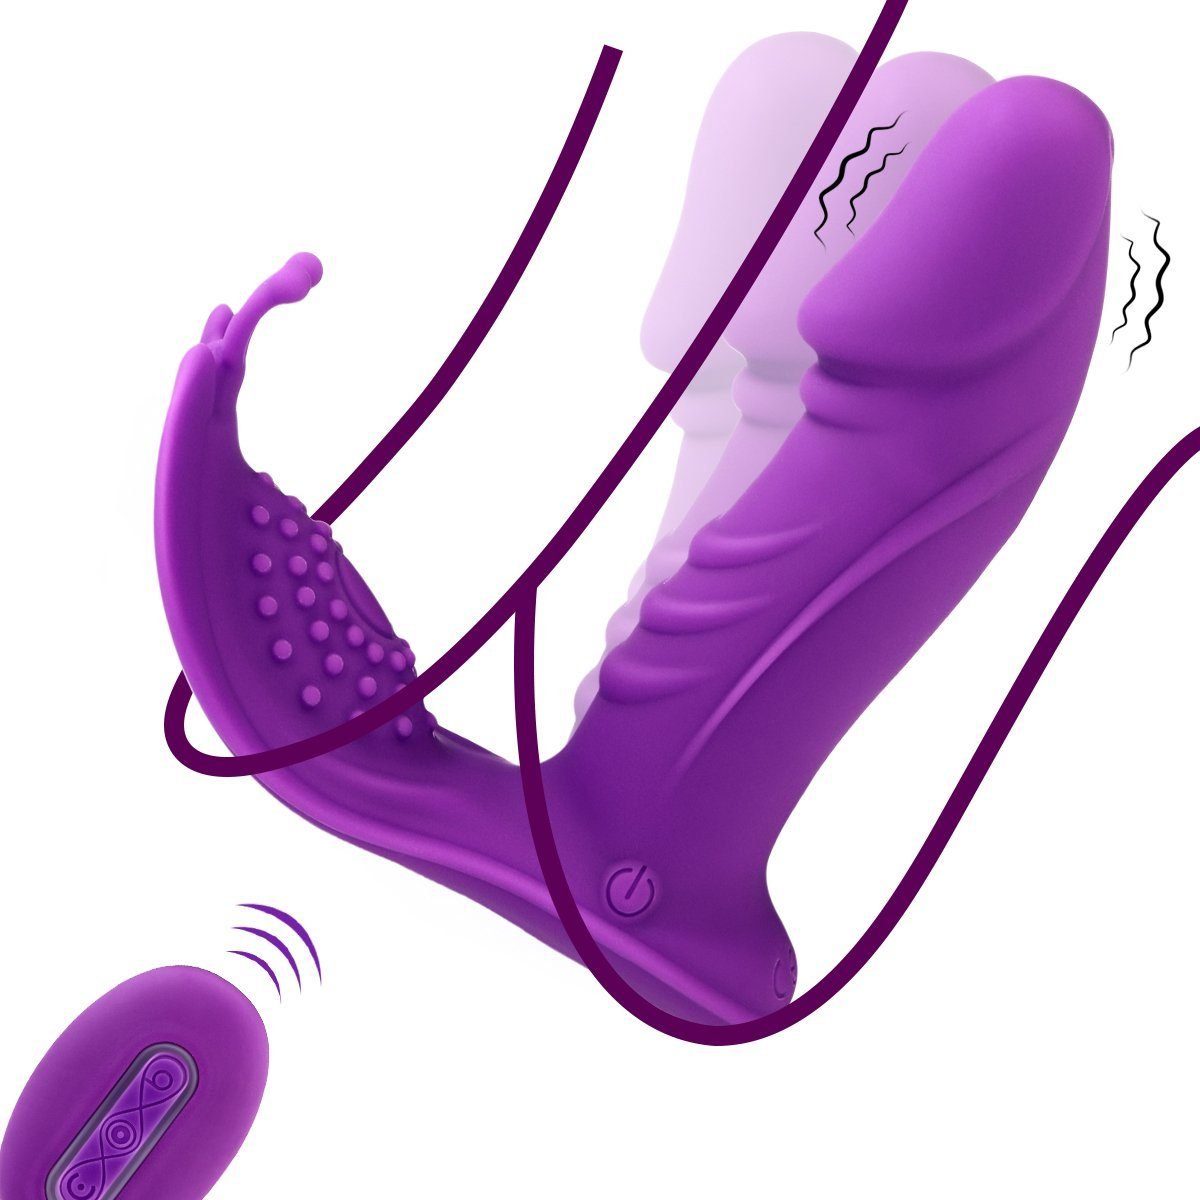 LOVONLIVE Massagegerät Tragbar Butterfly Vibrator für Vagina mit 3x7 Modi Swing-Stoßfunktion, Aufladbarer Dildo Vibrator Erotik Sex Spielzeug für die Frau Paare